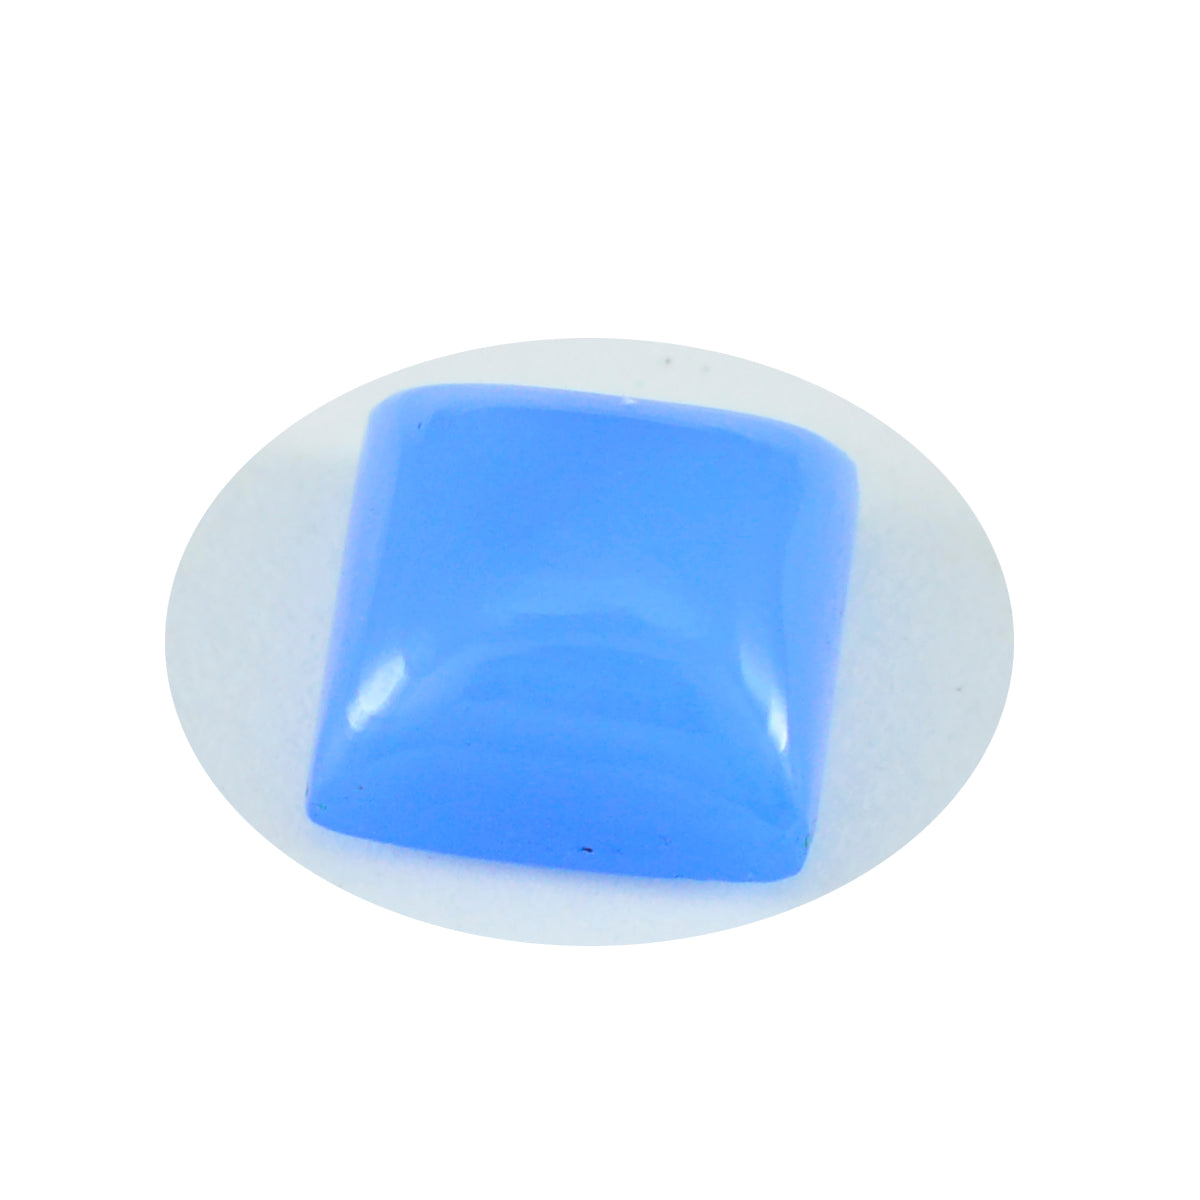 riyogems 1 шт. синий халцедон кабошон 15x15 мм квадратной формы драгоценные камни прекрасного качества